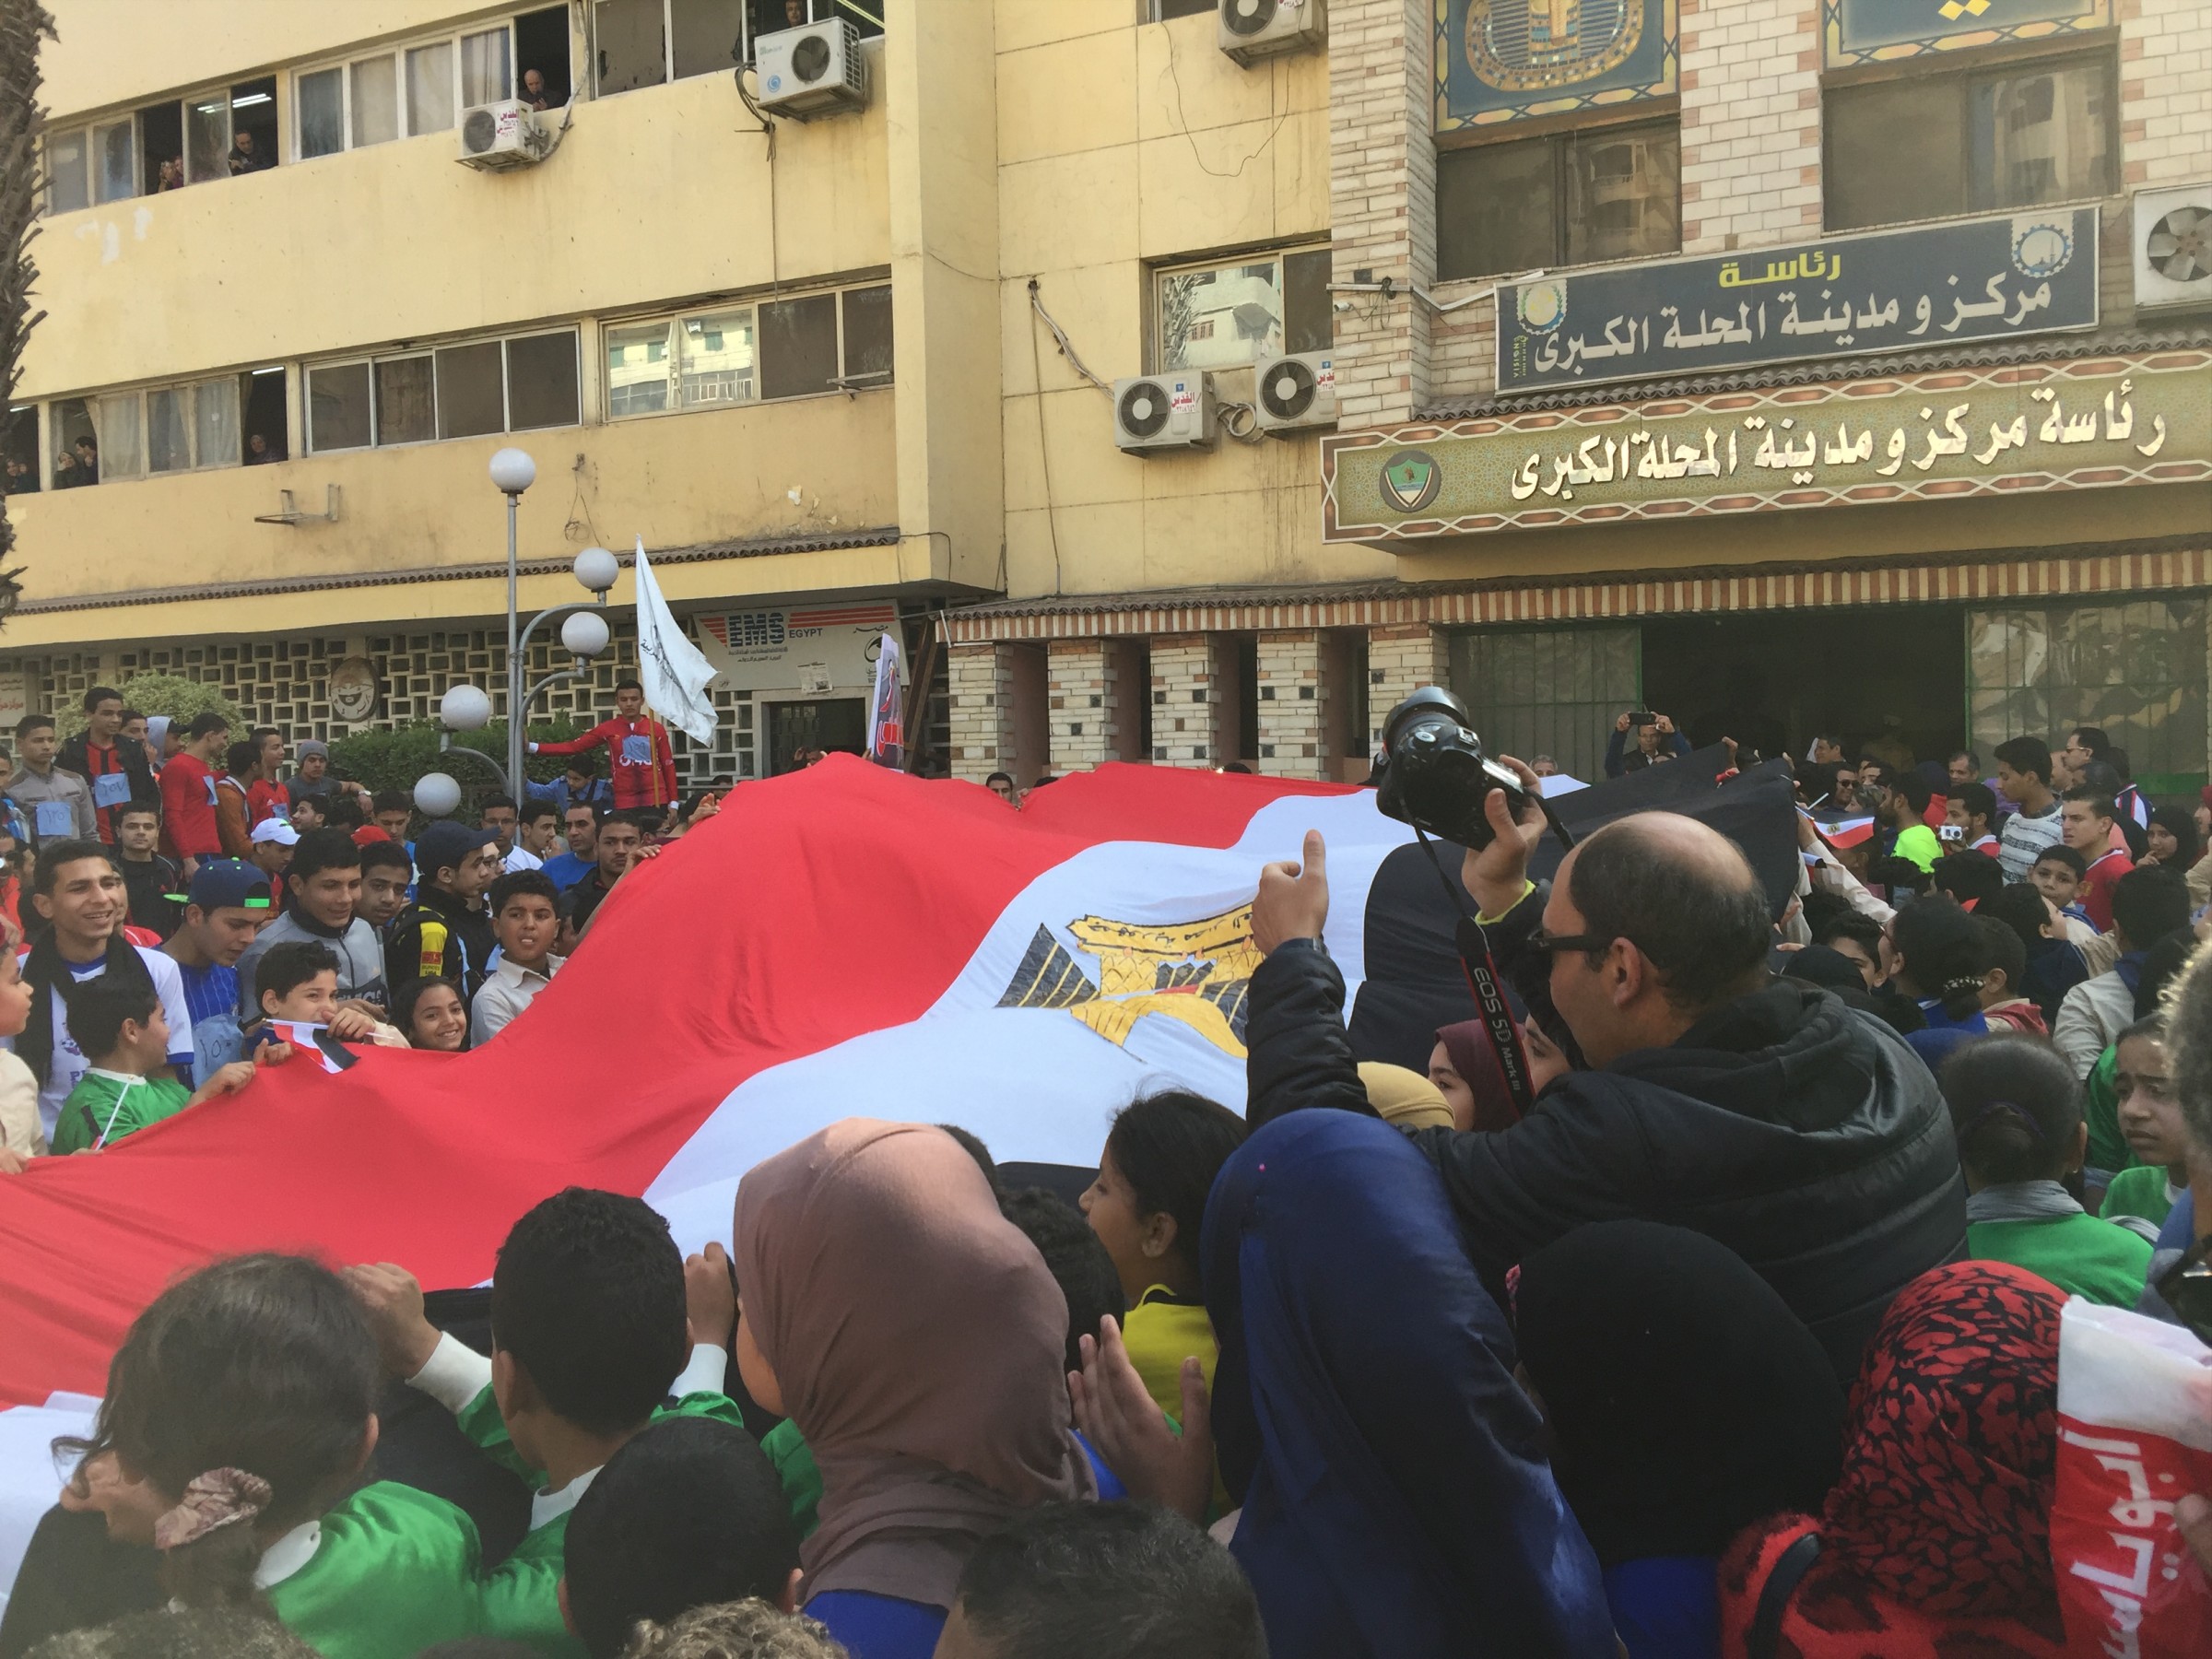 الطلاب يرفعون علم مصر فى ساحة مجلس المدينة